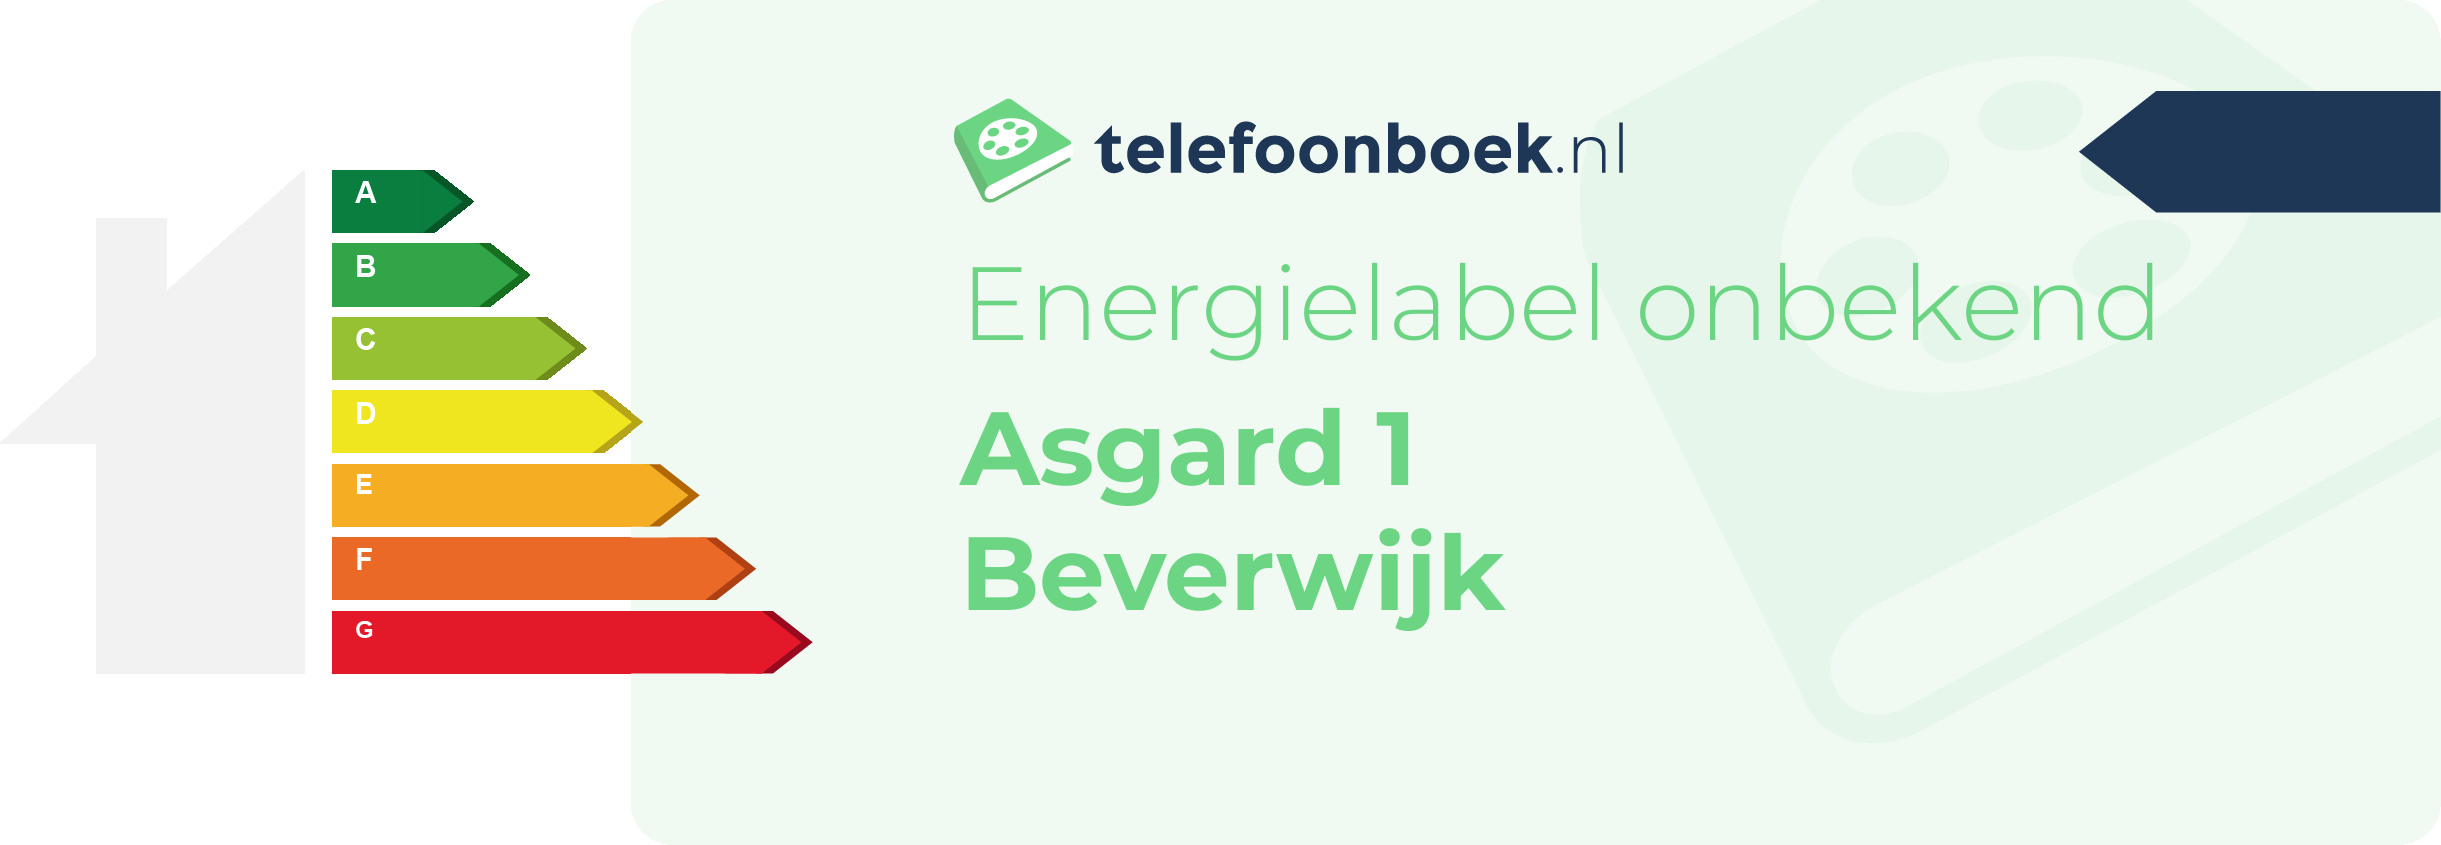 Energielabel Asgard 1 Beverwijk